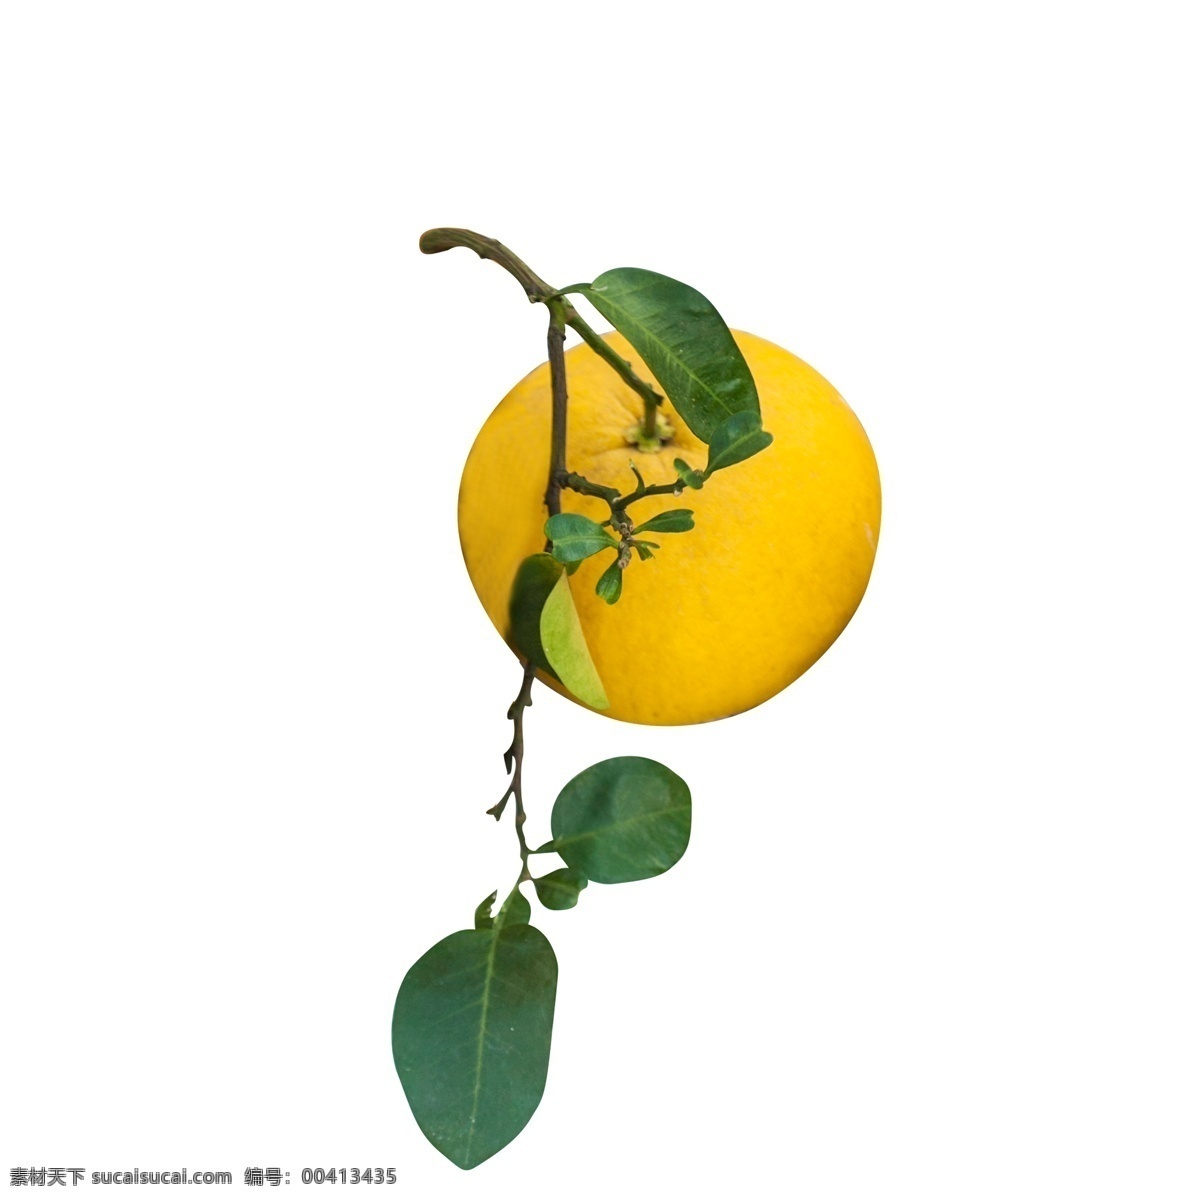 黄色 圆弧 柚子 食物 元素 创意 纹理 光泽 质感 绿色 叶子 圆润 叶脉 立体 水果 果实 味道